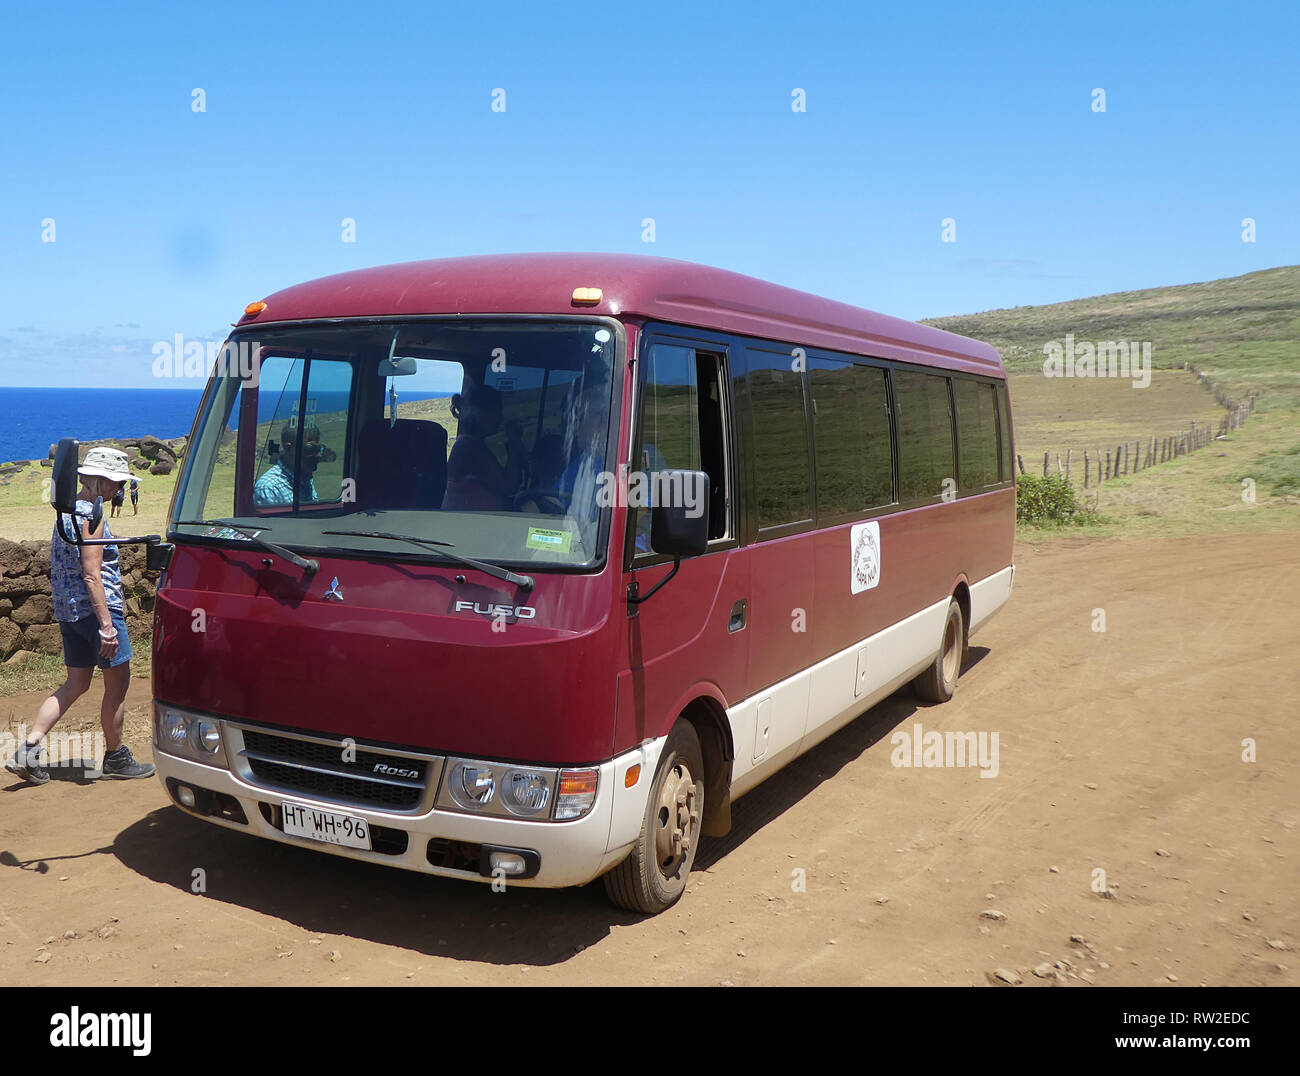 Mitsubishi Fuso bus in Chile 2019 Stock Photo